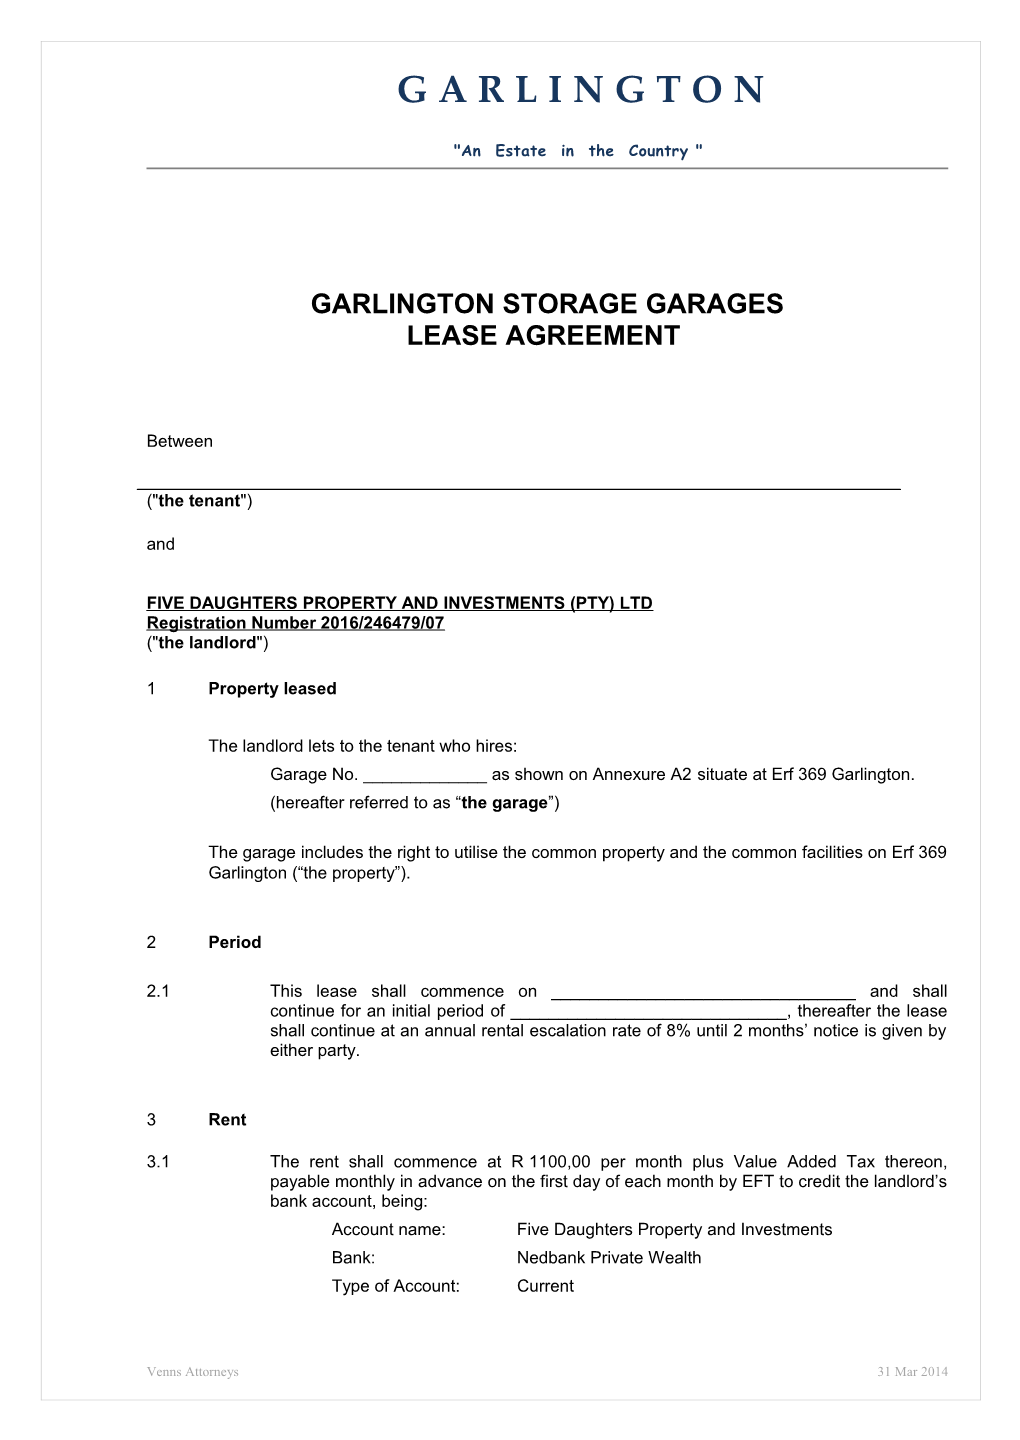 Garlington Storage Garages